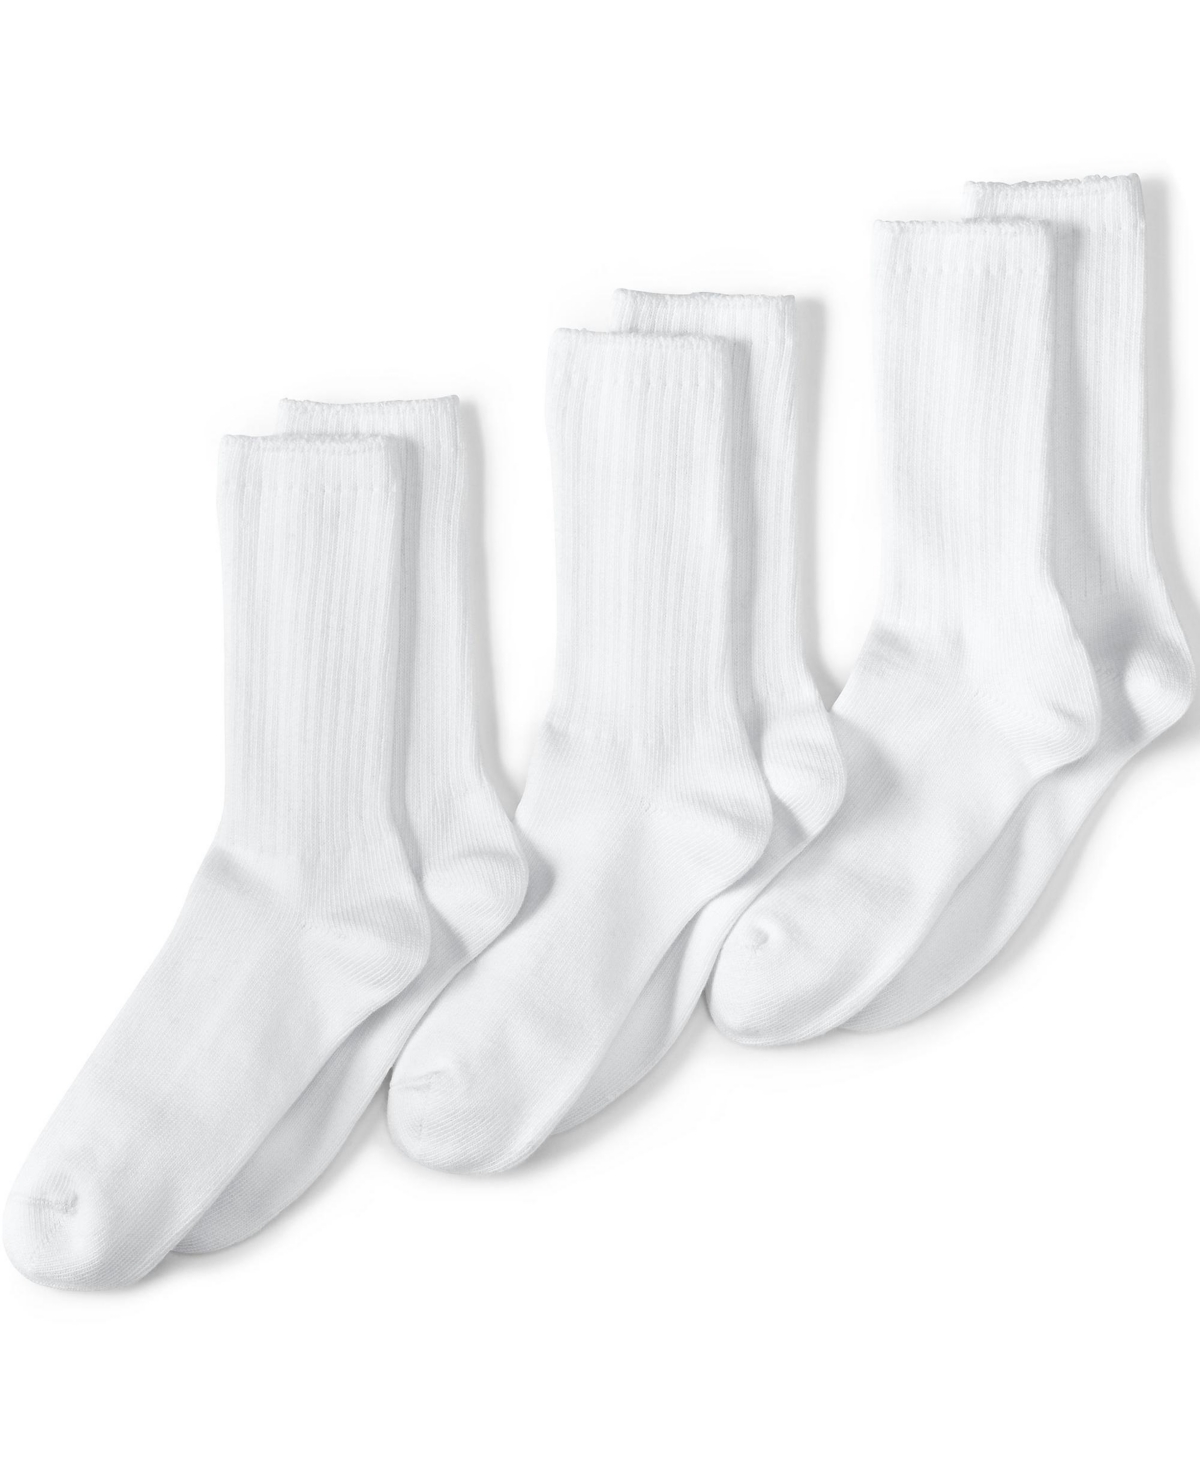 Men's School Uniform Crew Socks 3 Pack - White